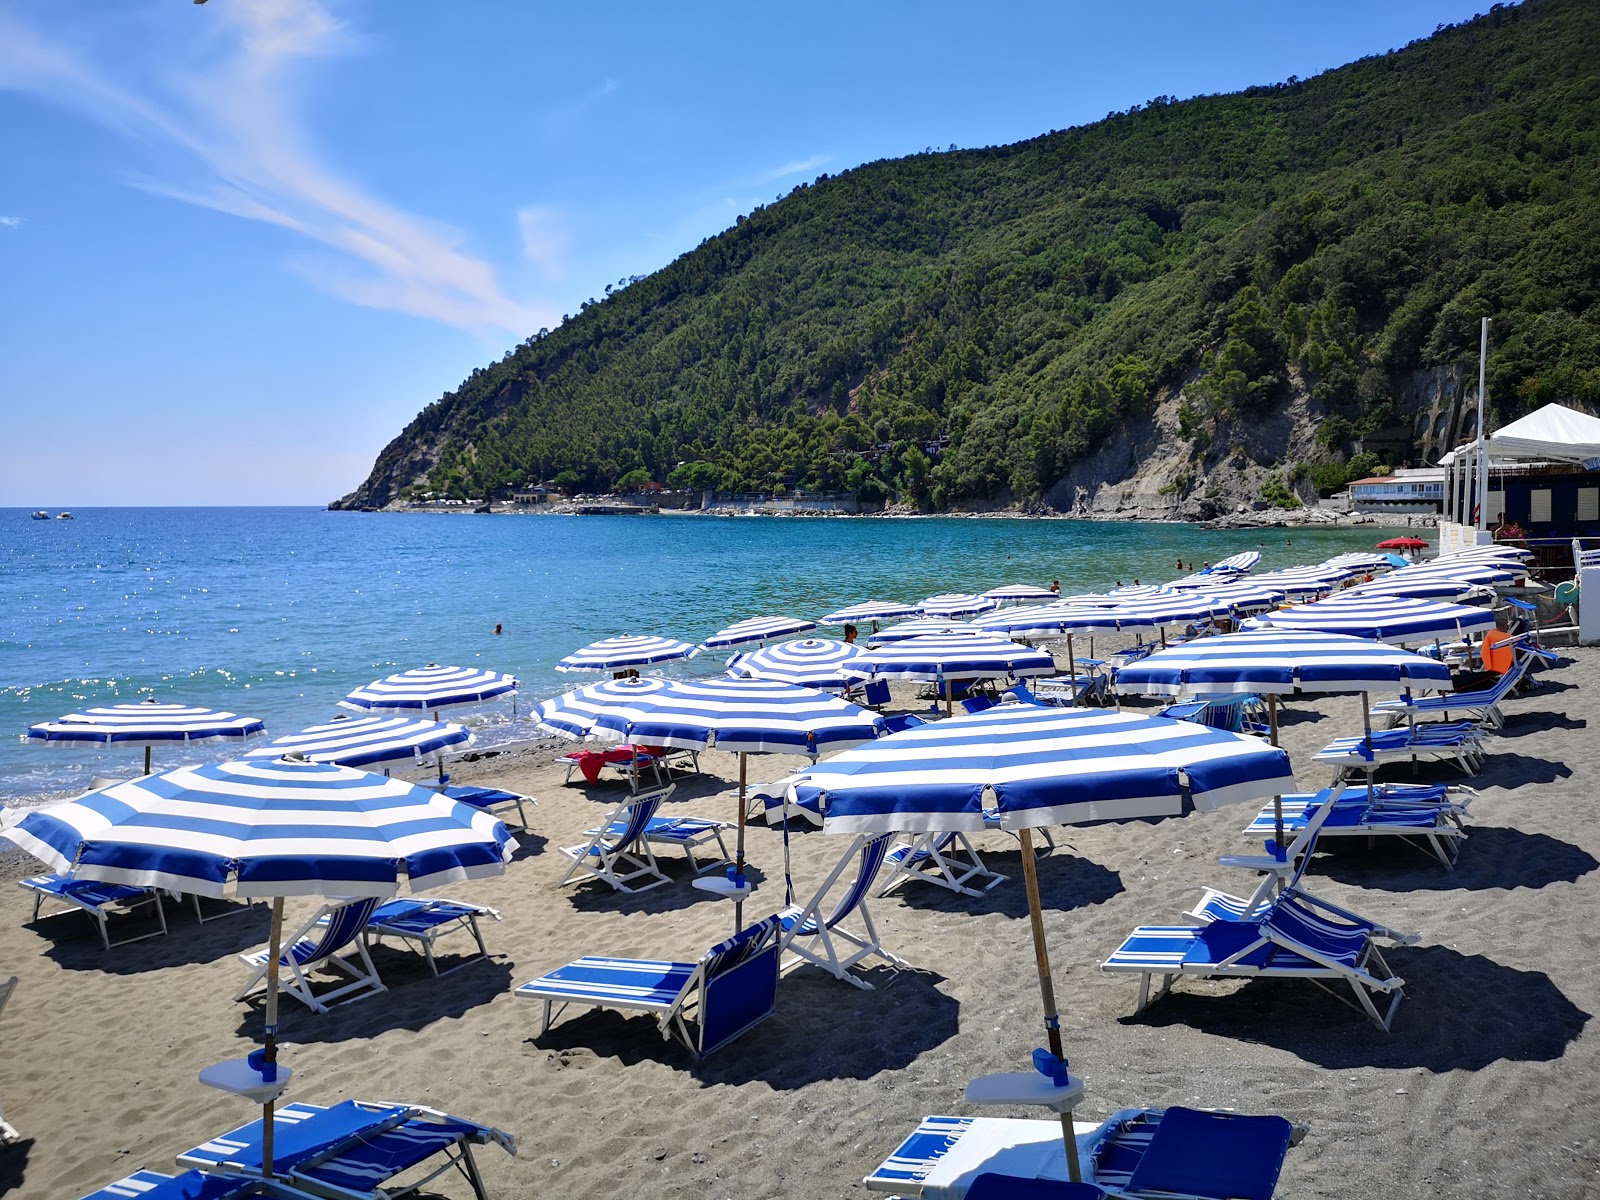 Foto von Spiaggia La Secca mit gerader strand